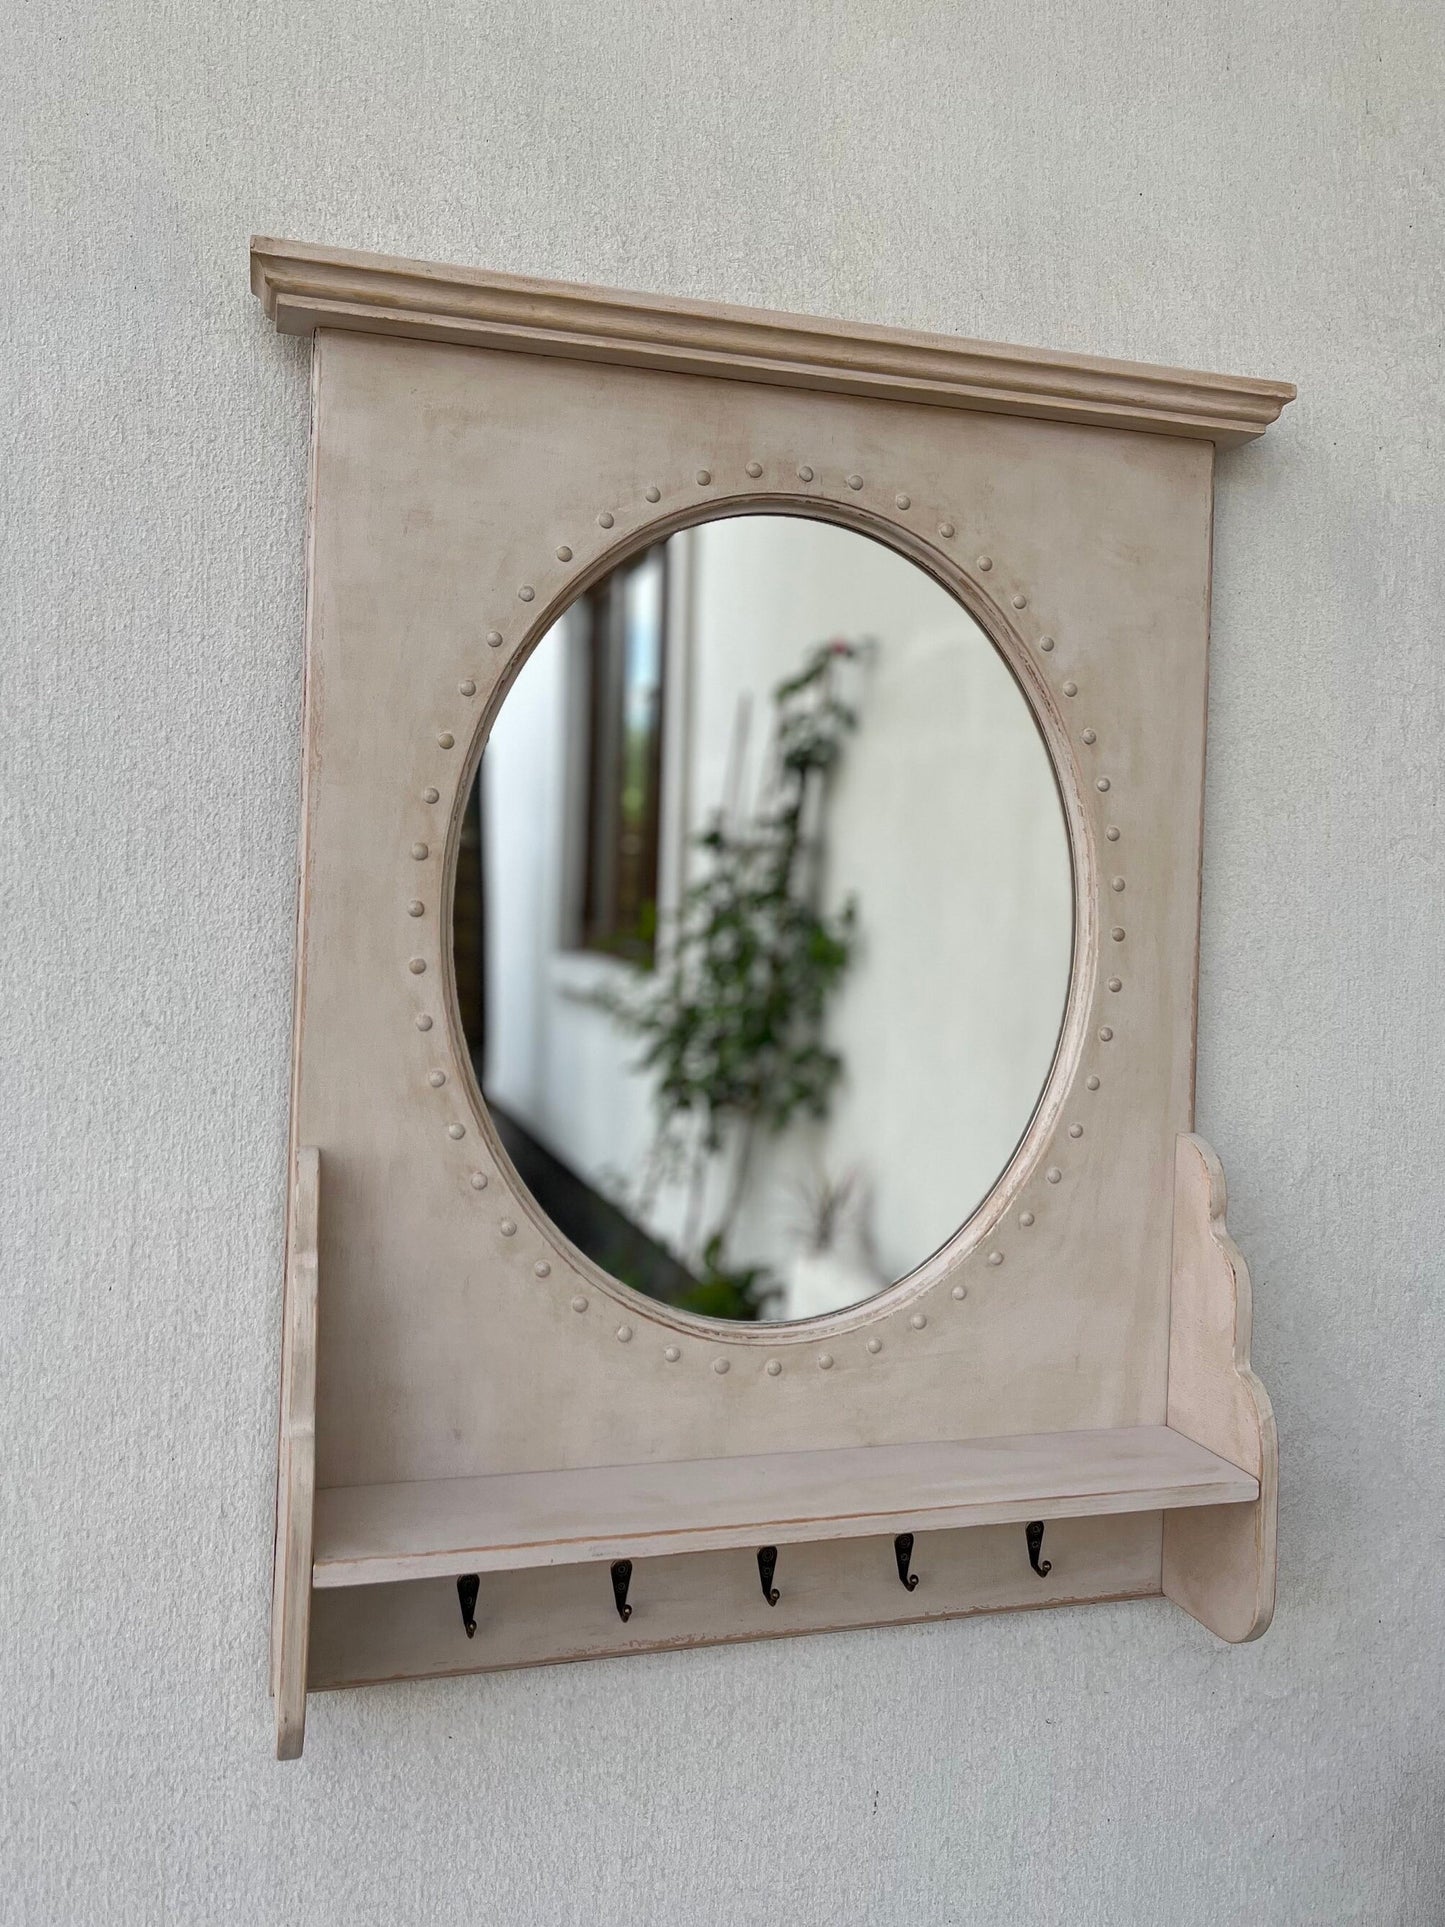 Французьке дерев’яне дзеркало ручної роботи з полицею, дерев’яне дзеркало у вінтажному стилі, велике овальне дзеркало з полицею, дерев’яне дзеркало в рустикальному стилі з гачками